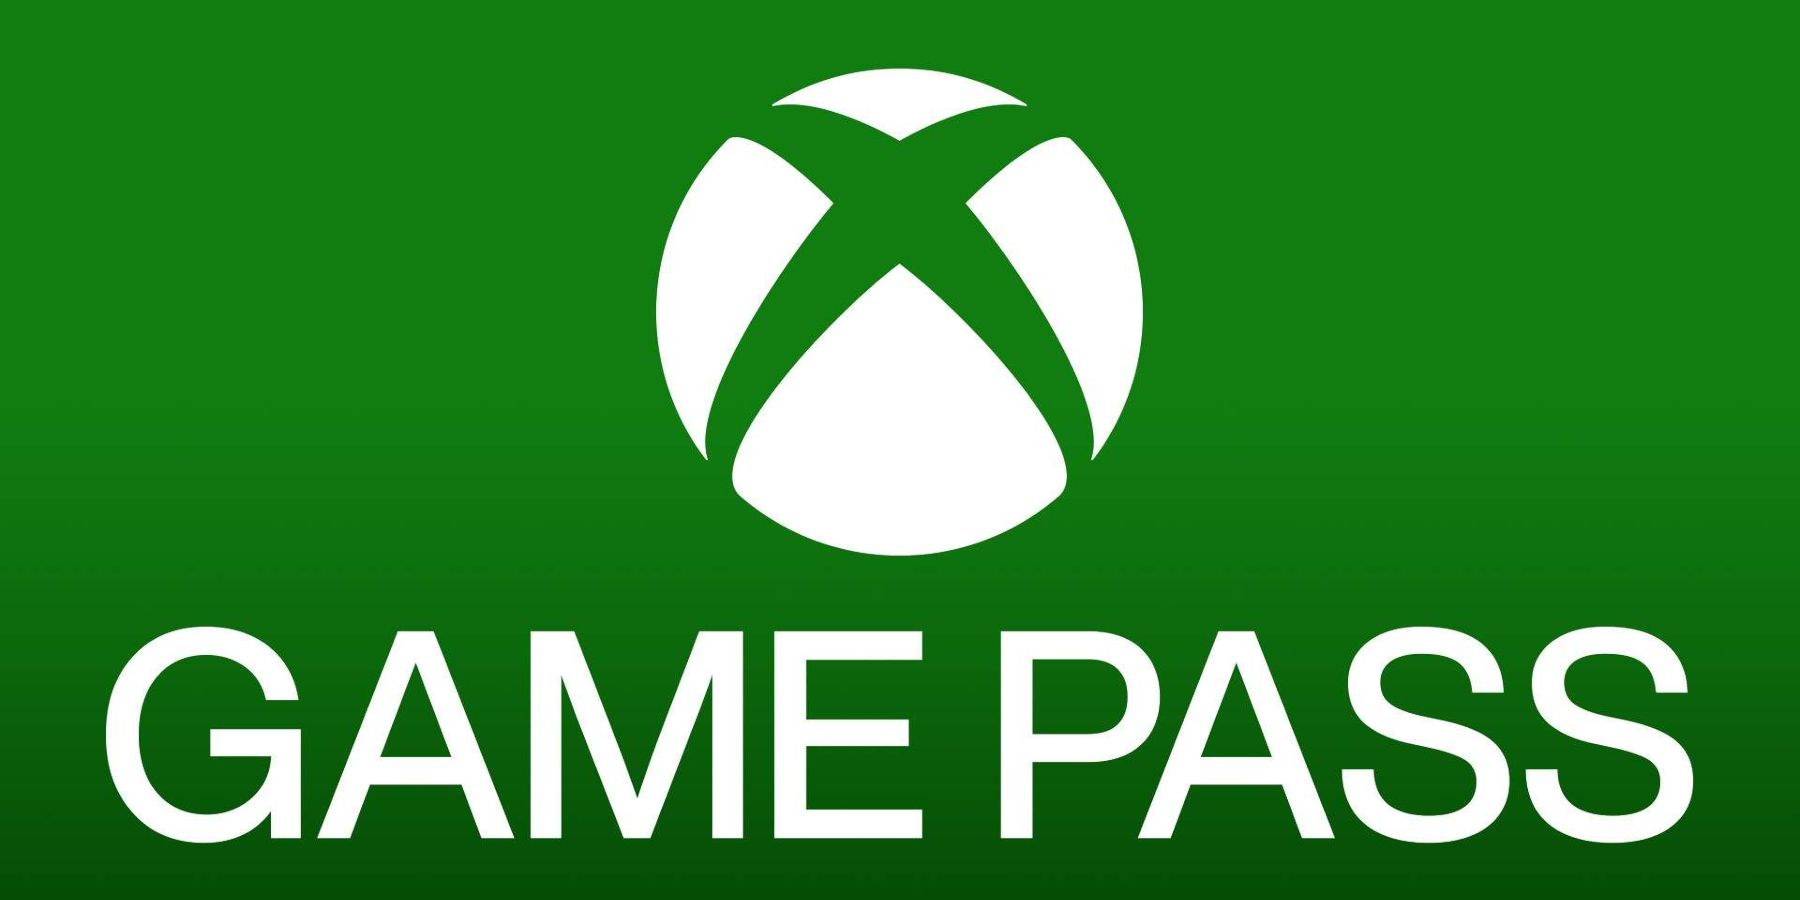 FRISSÍTÉS: Az Xbox Game Pass előfizetők száma 30 millió, mondja a Take-Two vezérigazgatója